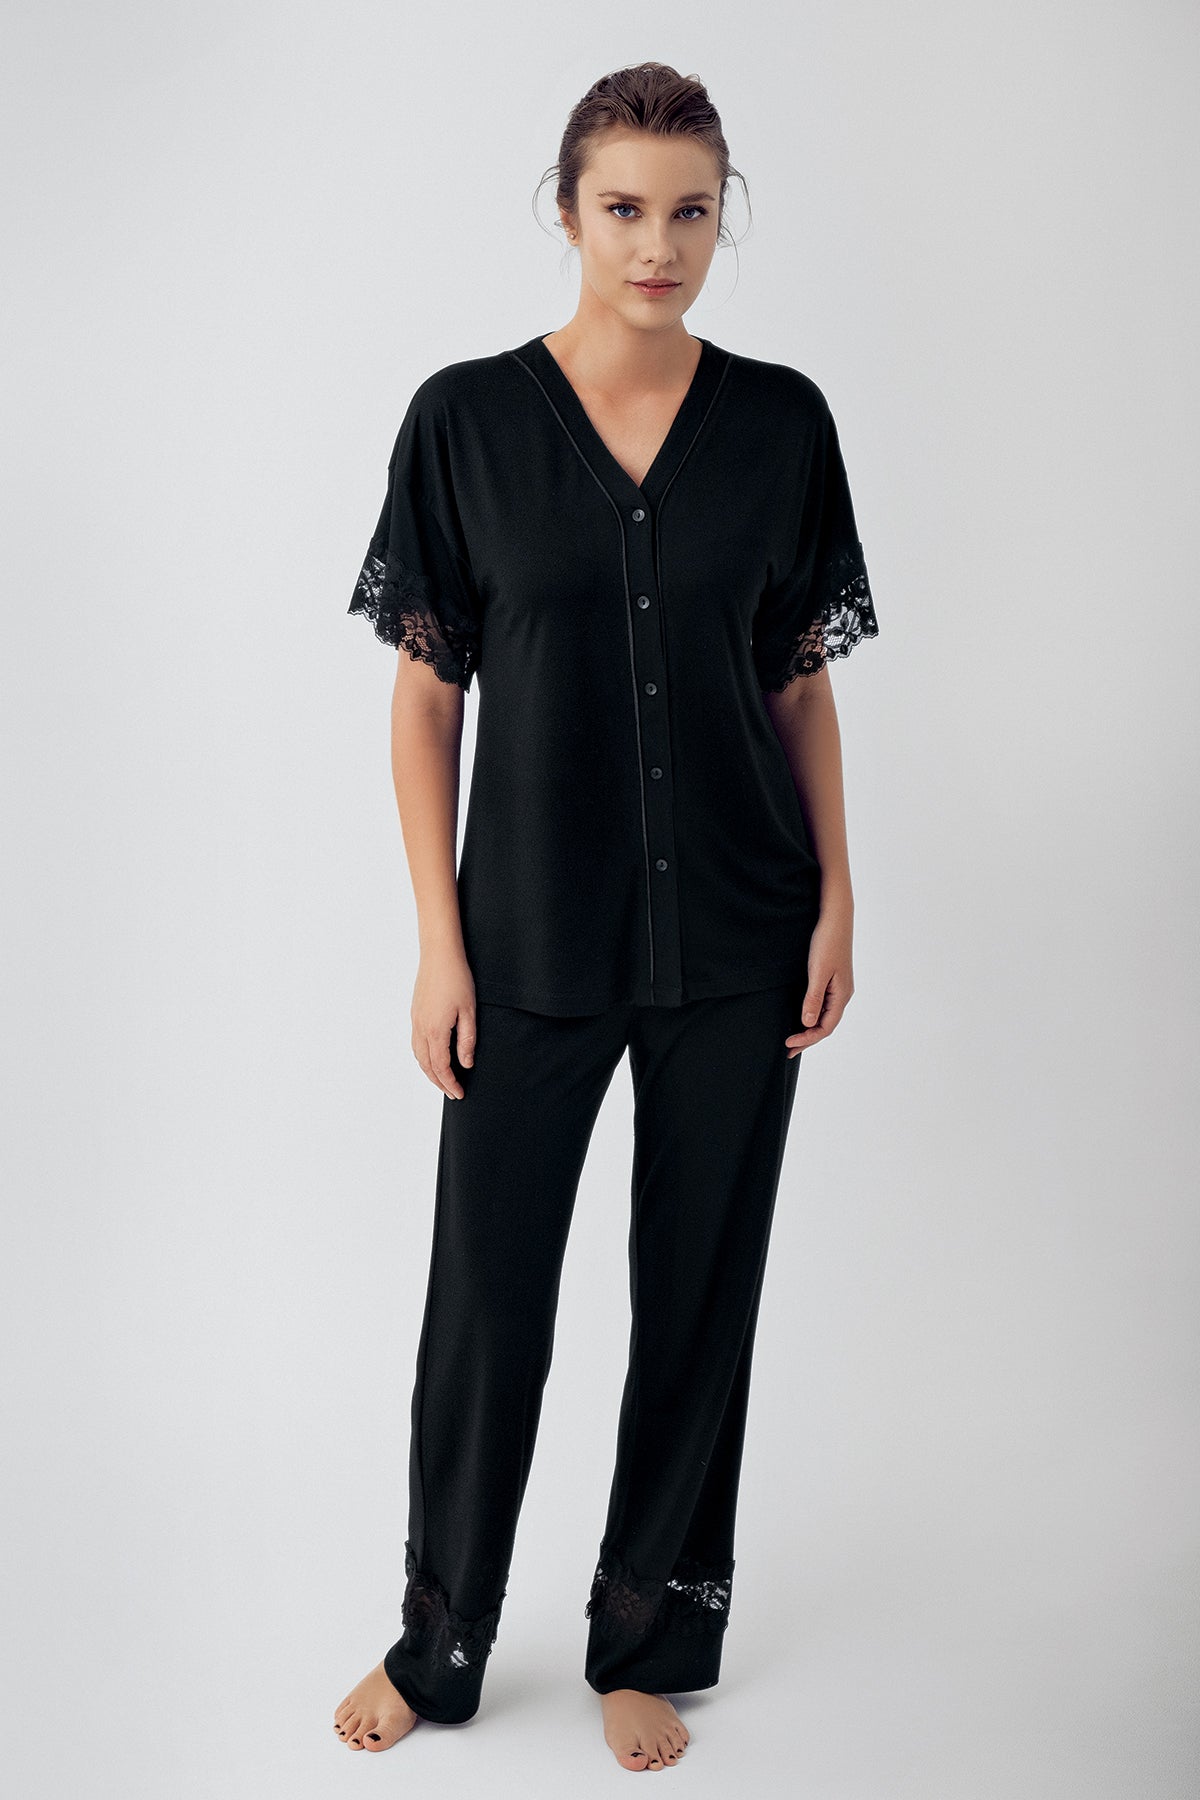 Shopymommy 16211 Lace Sleeve Maternity & Nursing Pajamas Black